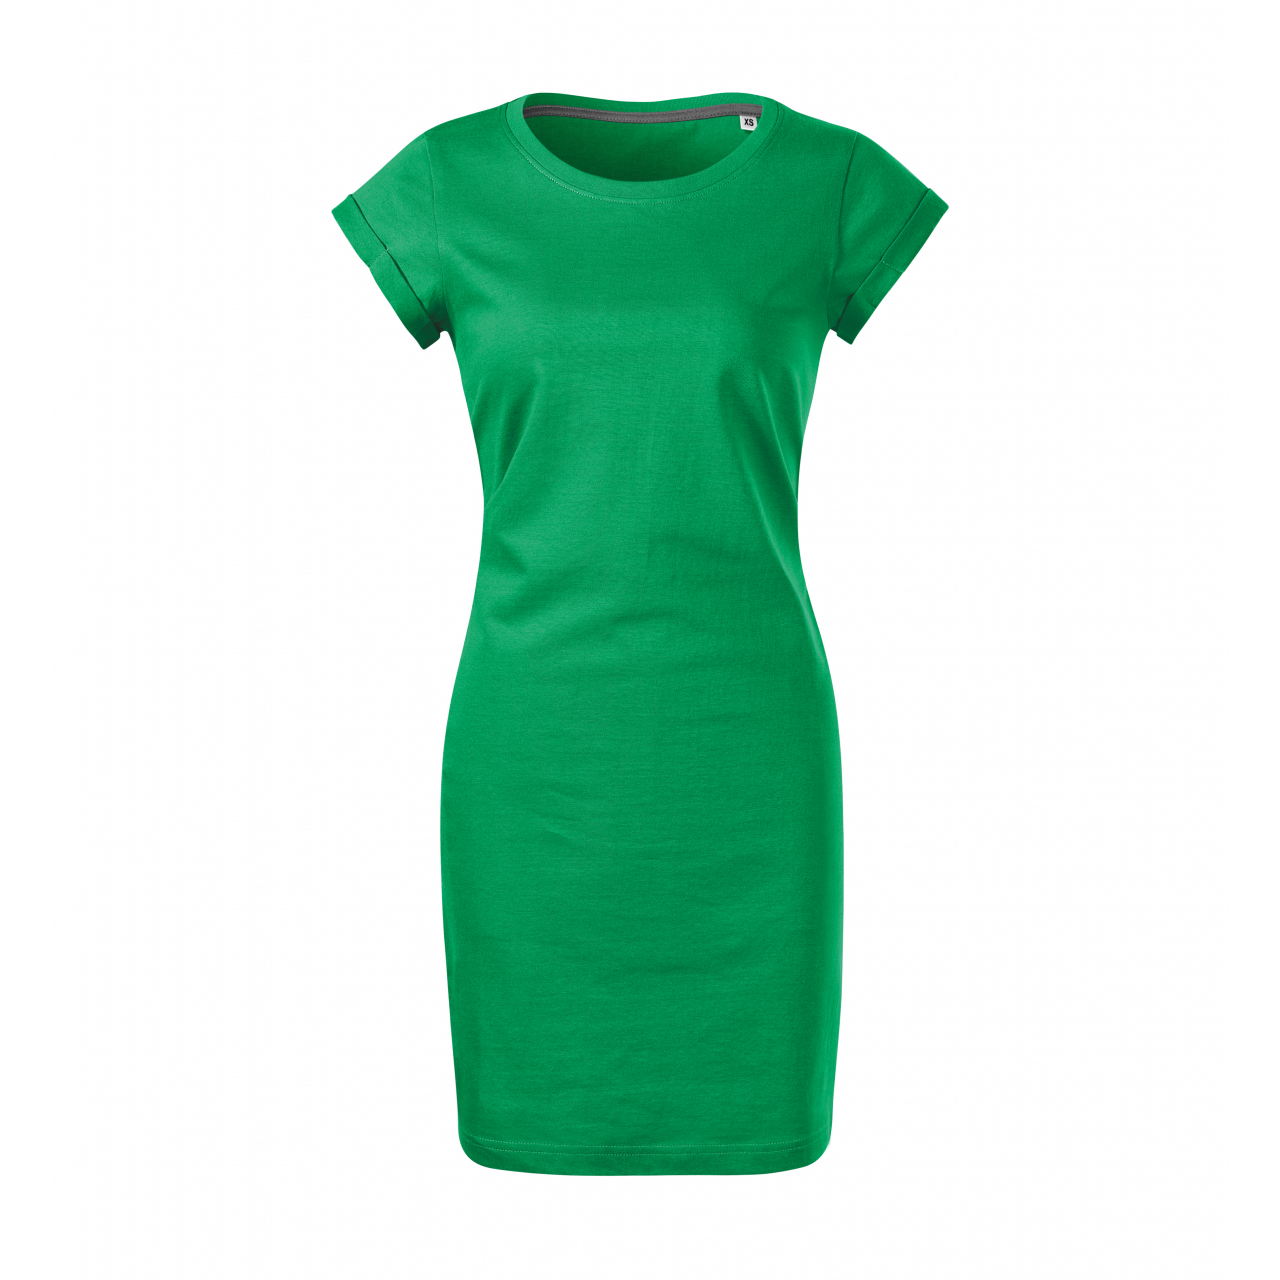 Šaty dámské Malfini Freedom - zelené, XS